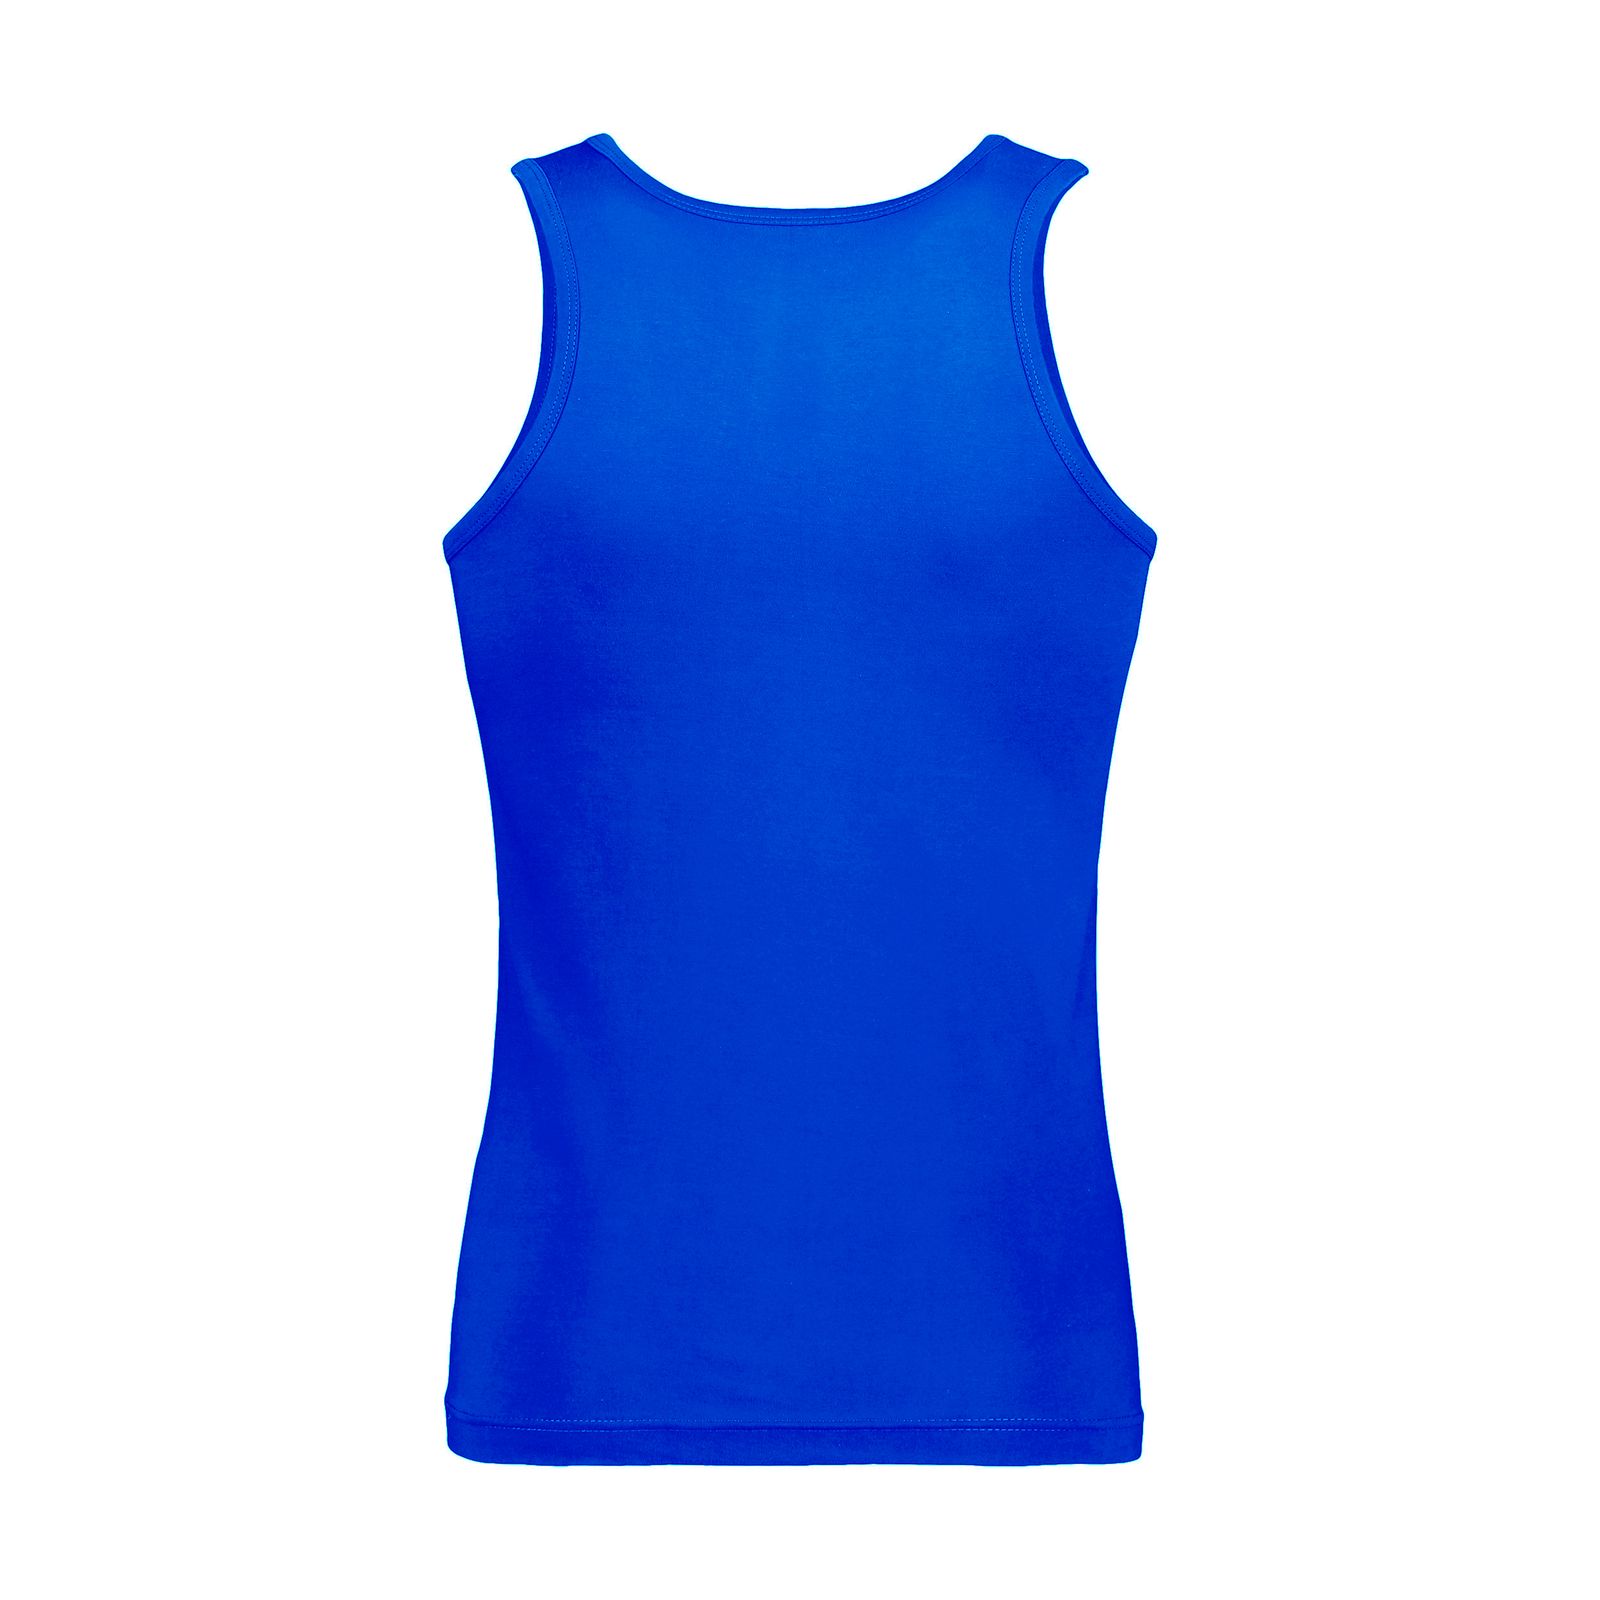 زیرپوش رکابی مردانه برهان تن پوش مدل 14-01 رنگ آبی بسته 6 عددی -  - 4